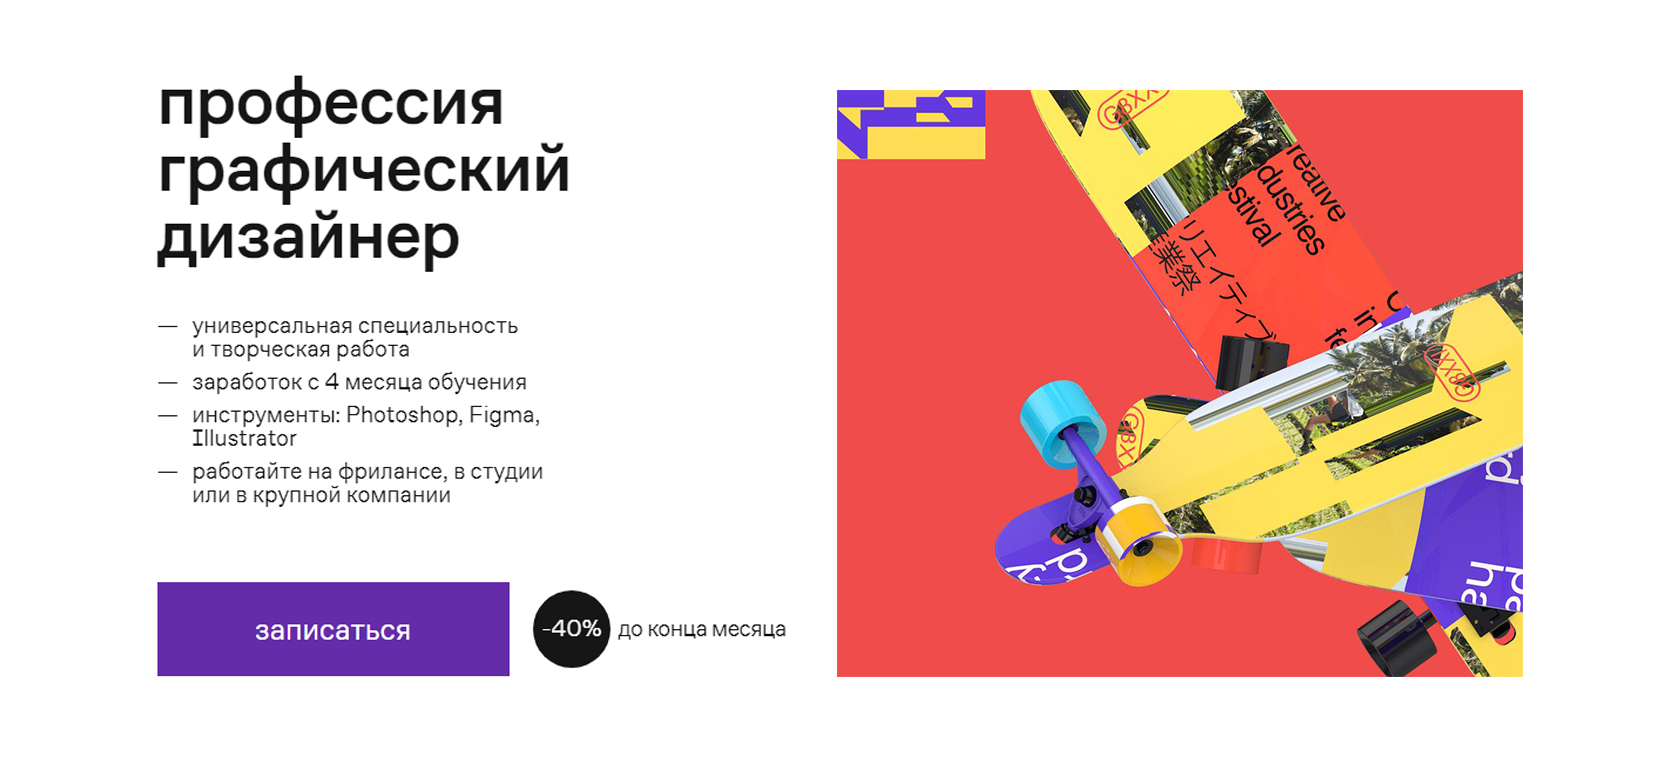 Графический дизайн — профессиональная переподготовка по всей России